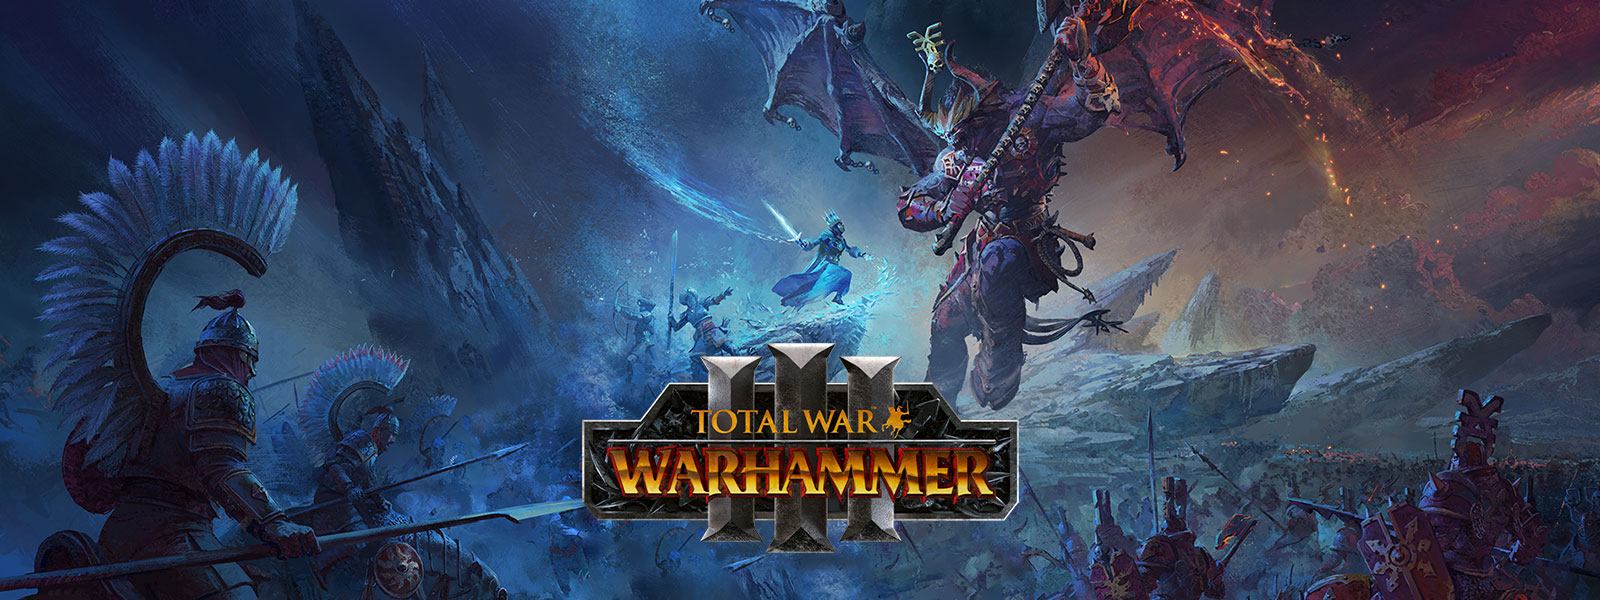 Total War Warhammer 3, Um mago do gelo enfrenta um demônio dragão gigante sobre um campo de batalha.